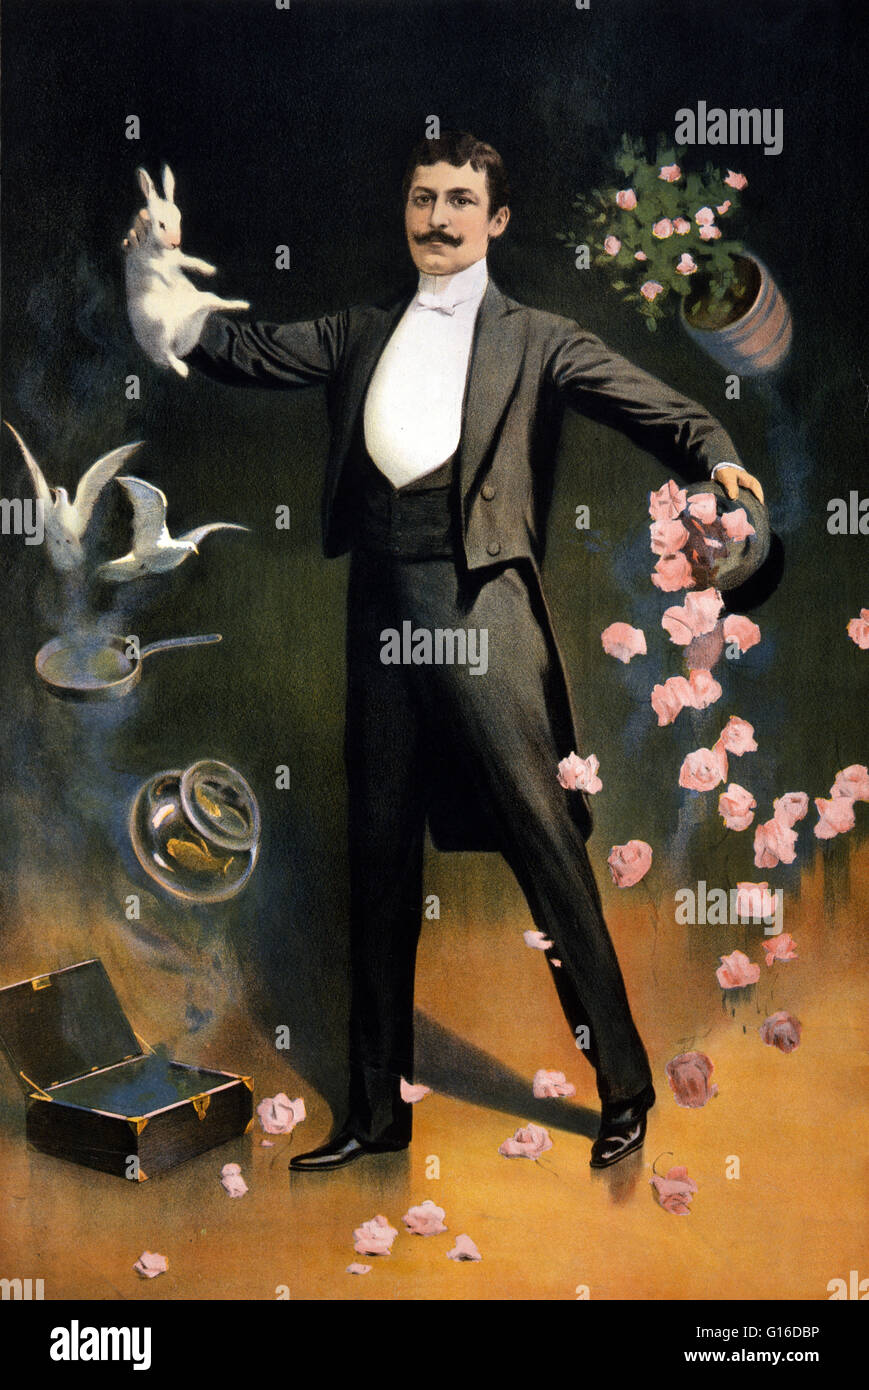 Levitation trick magician immagini e fotografie stock ad alta risoluzione -  Alamy